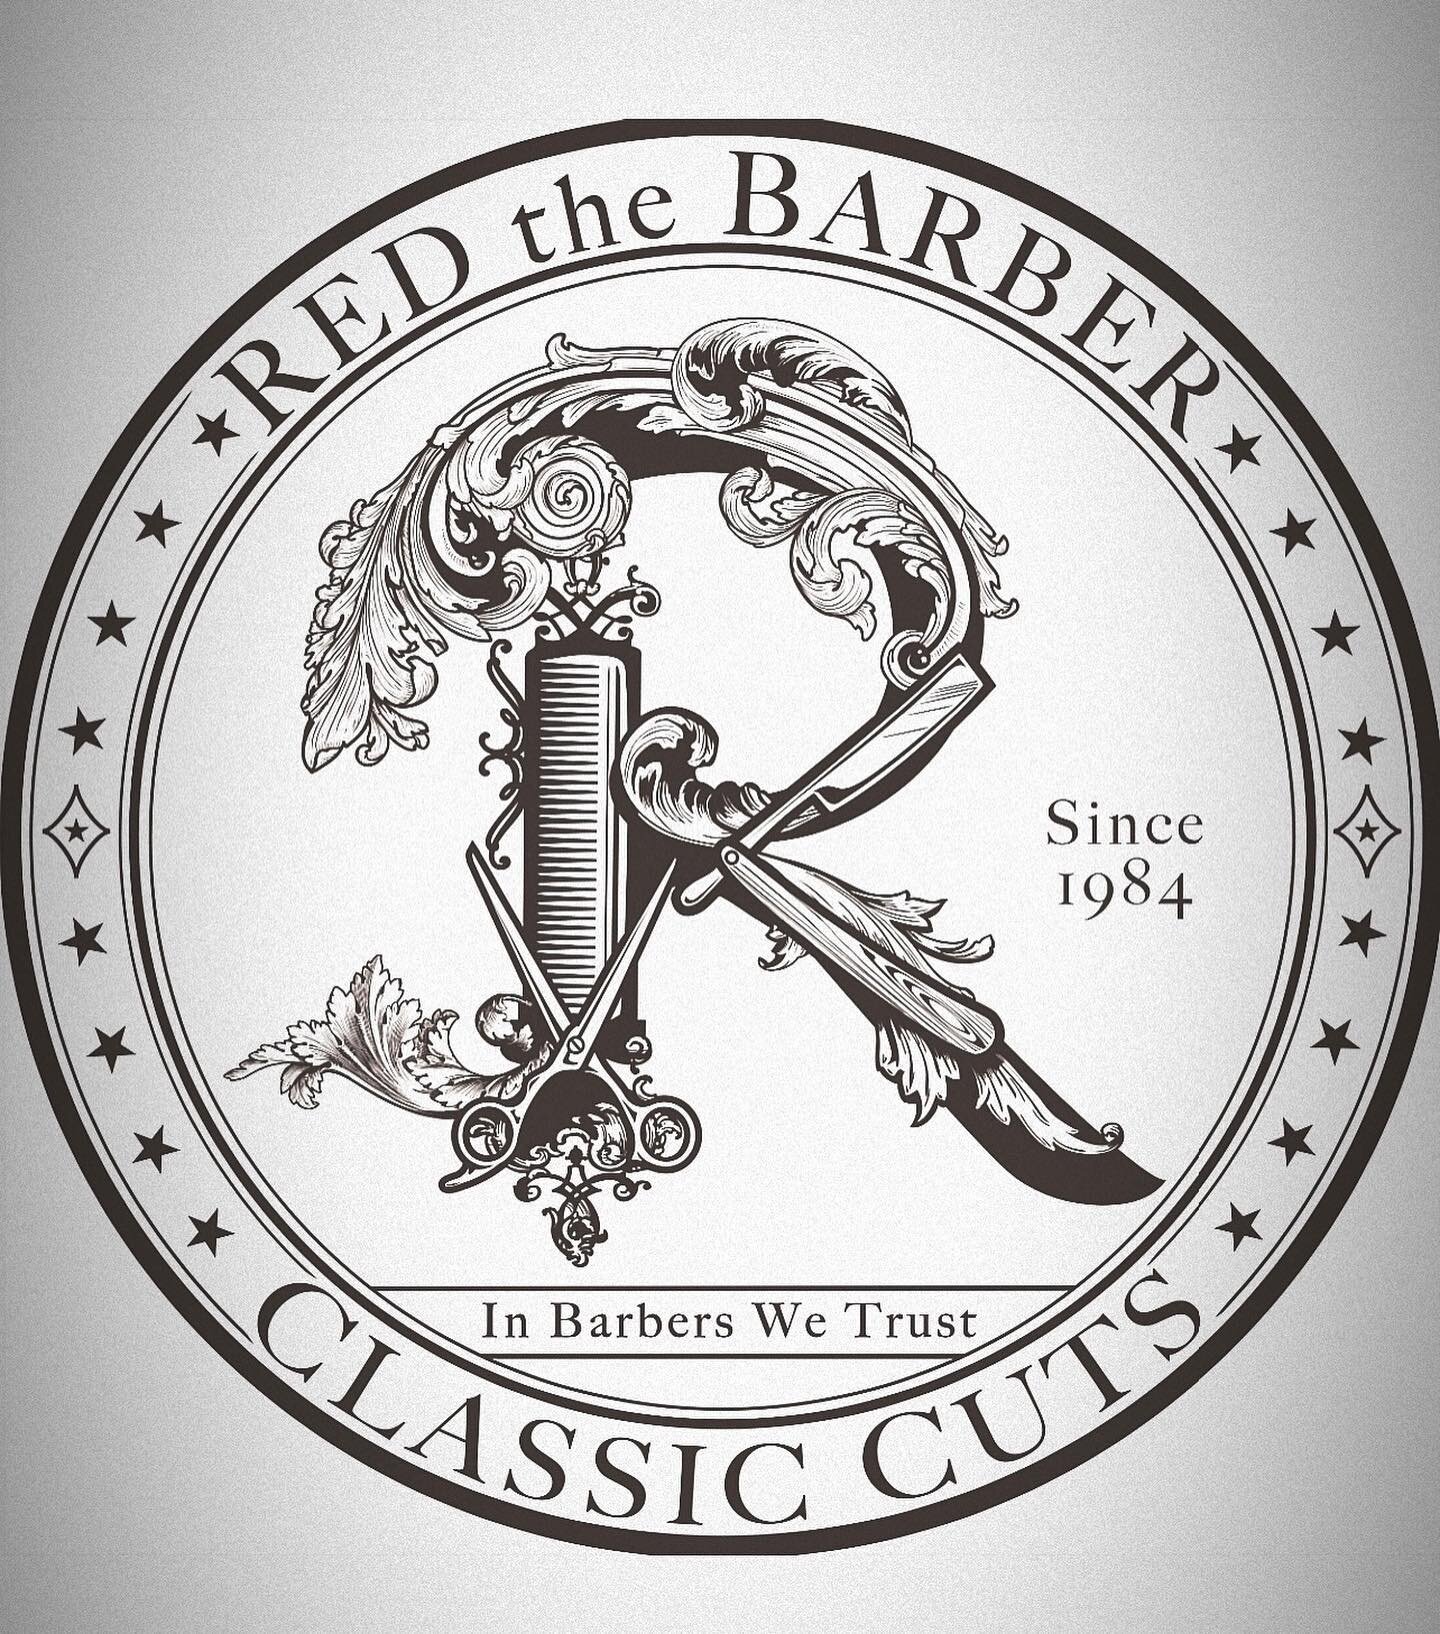 Est. 1984 in Barbers we trust
REDTHEBARBERSJ.COM